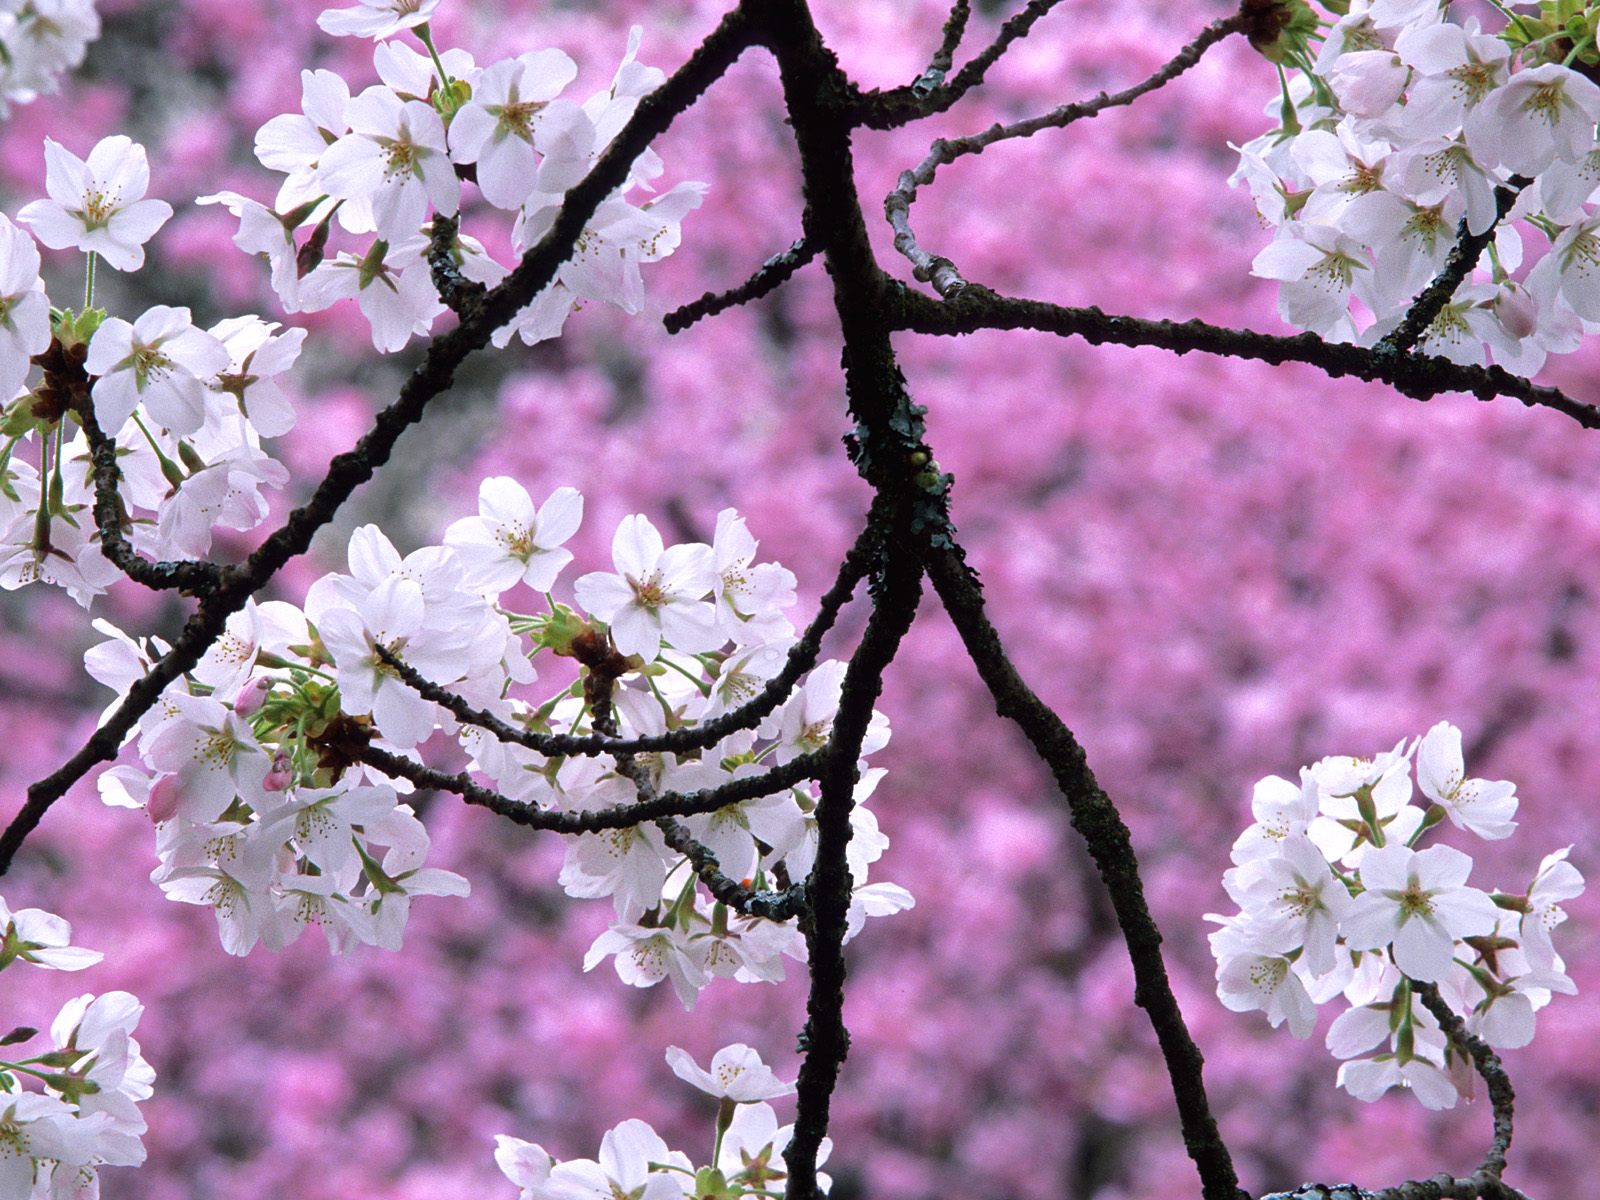 cute cherry blossom wallpaper desktop